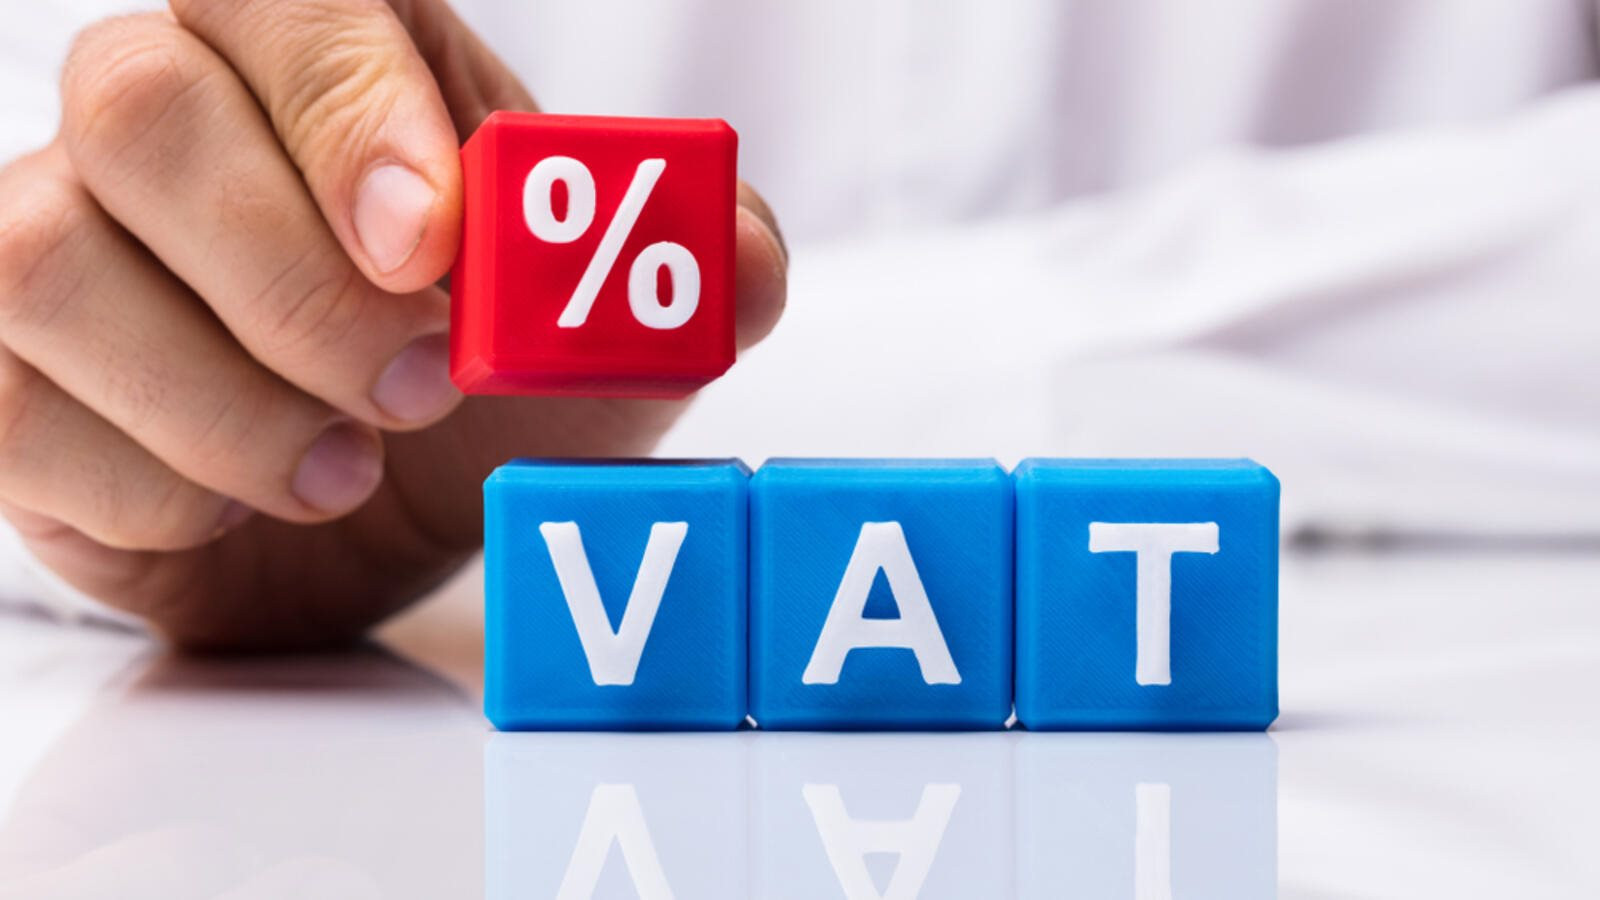 VCCI kiến nghị giảm 2% VAT cho mọi hàng hóa